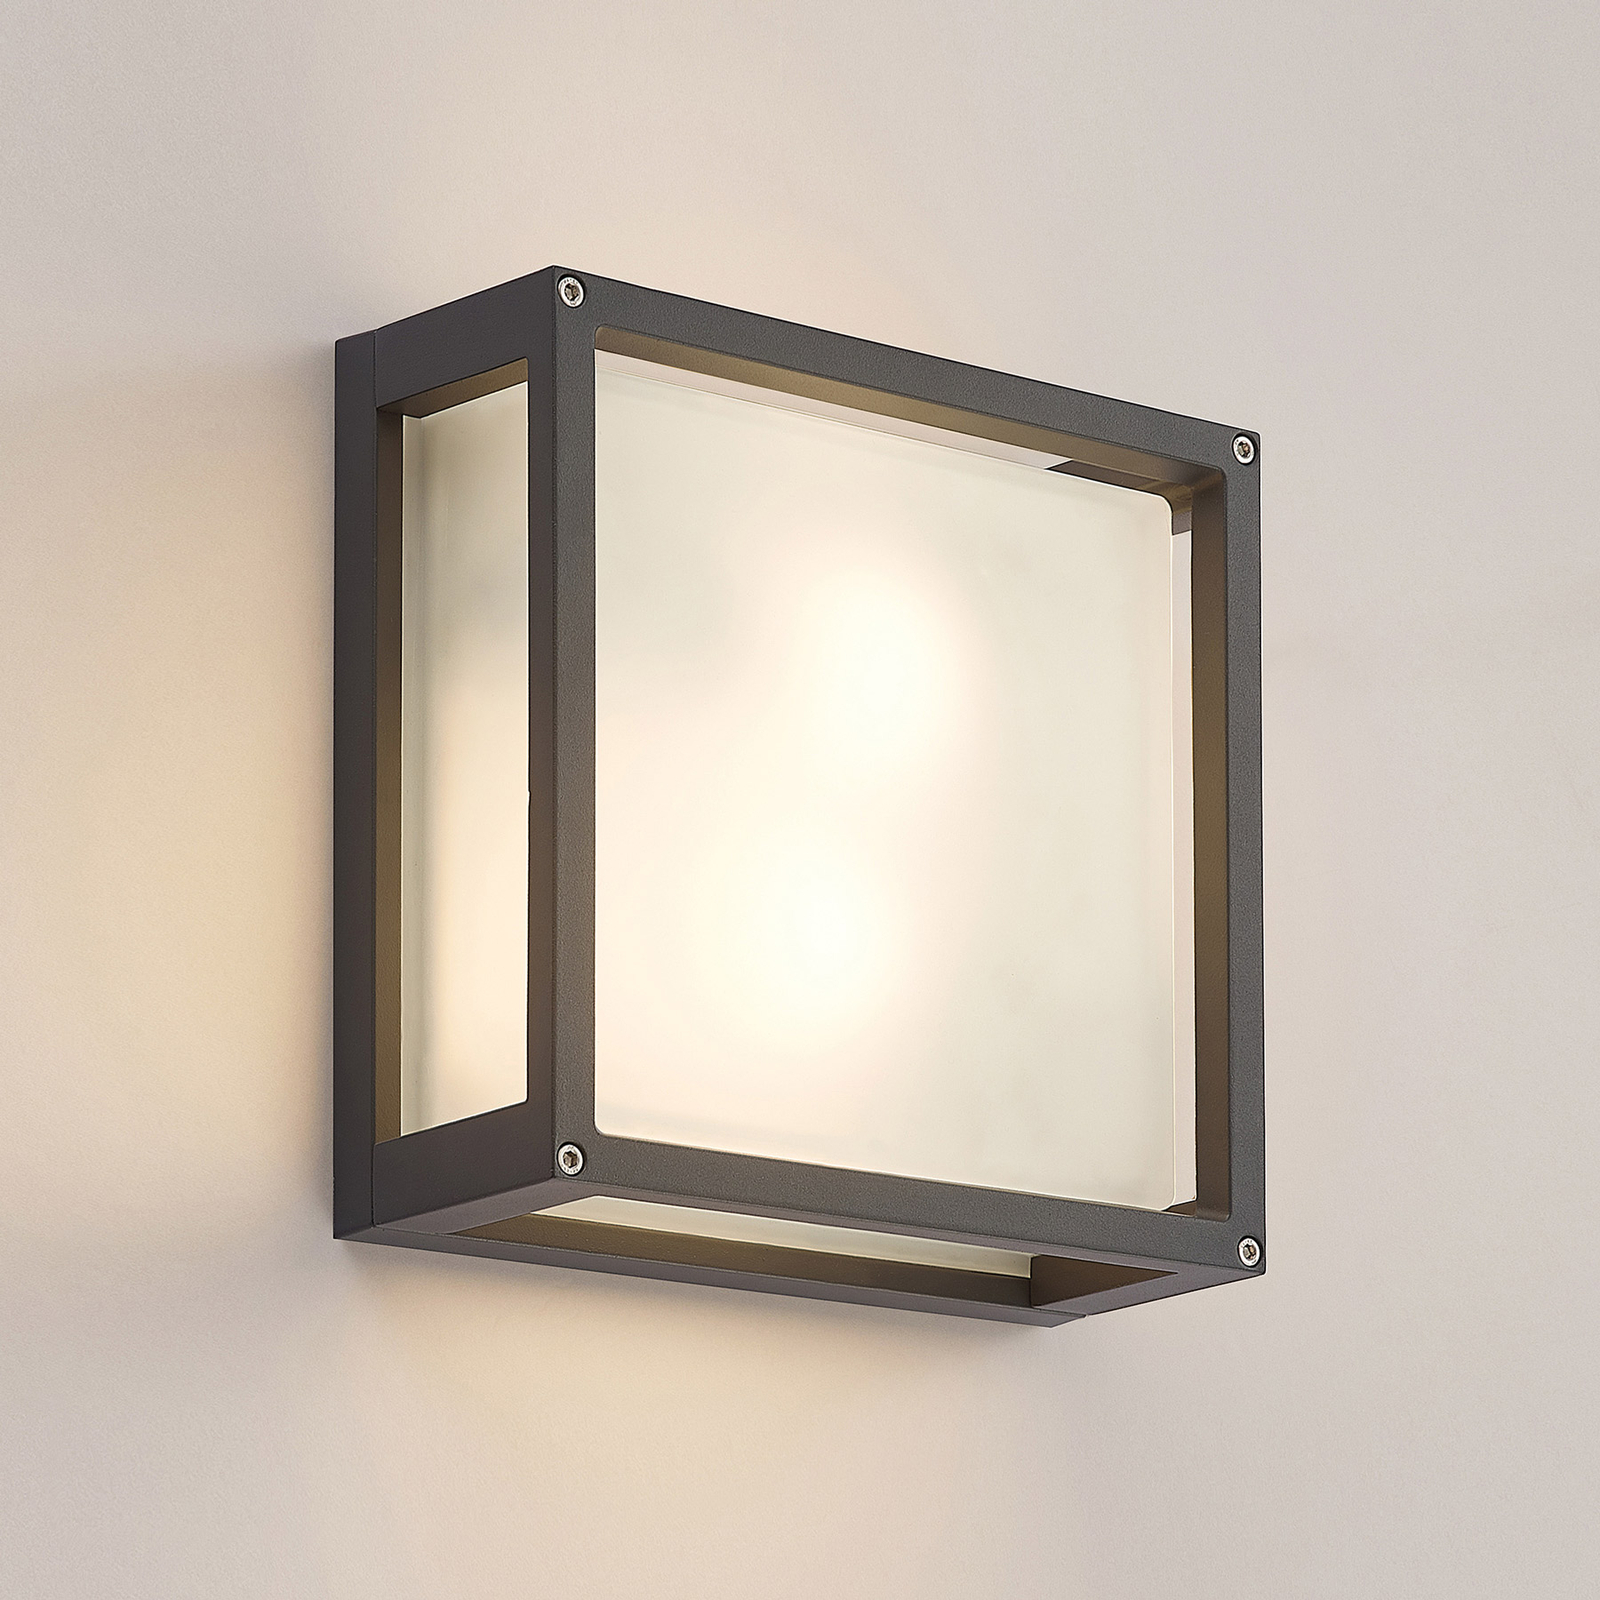 ELC Soleila kültéri fali lámpa, 25 cm x 25 cm